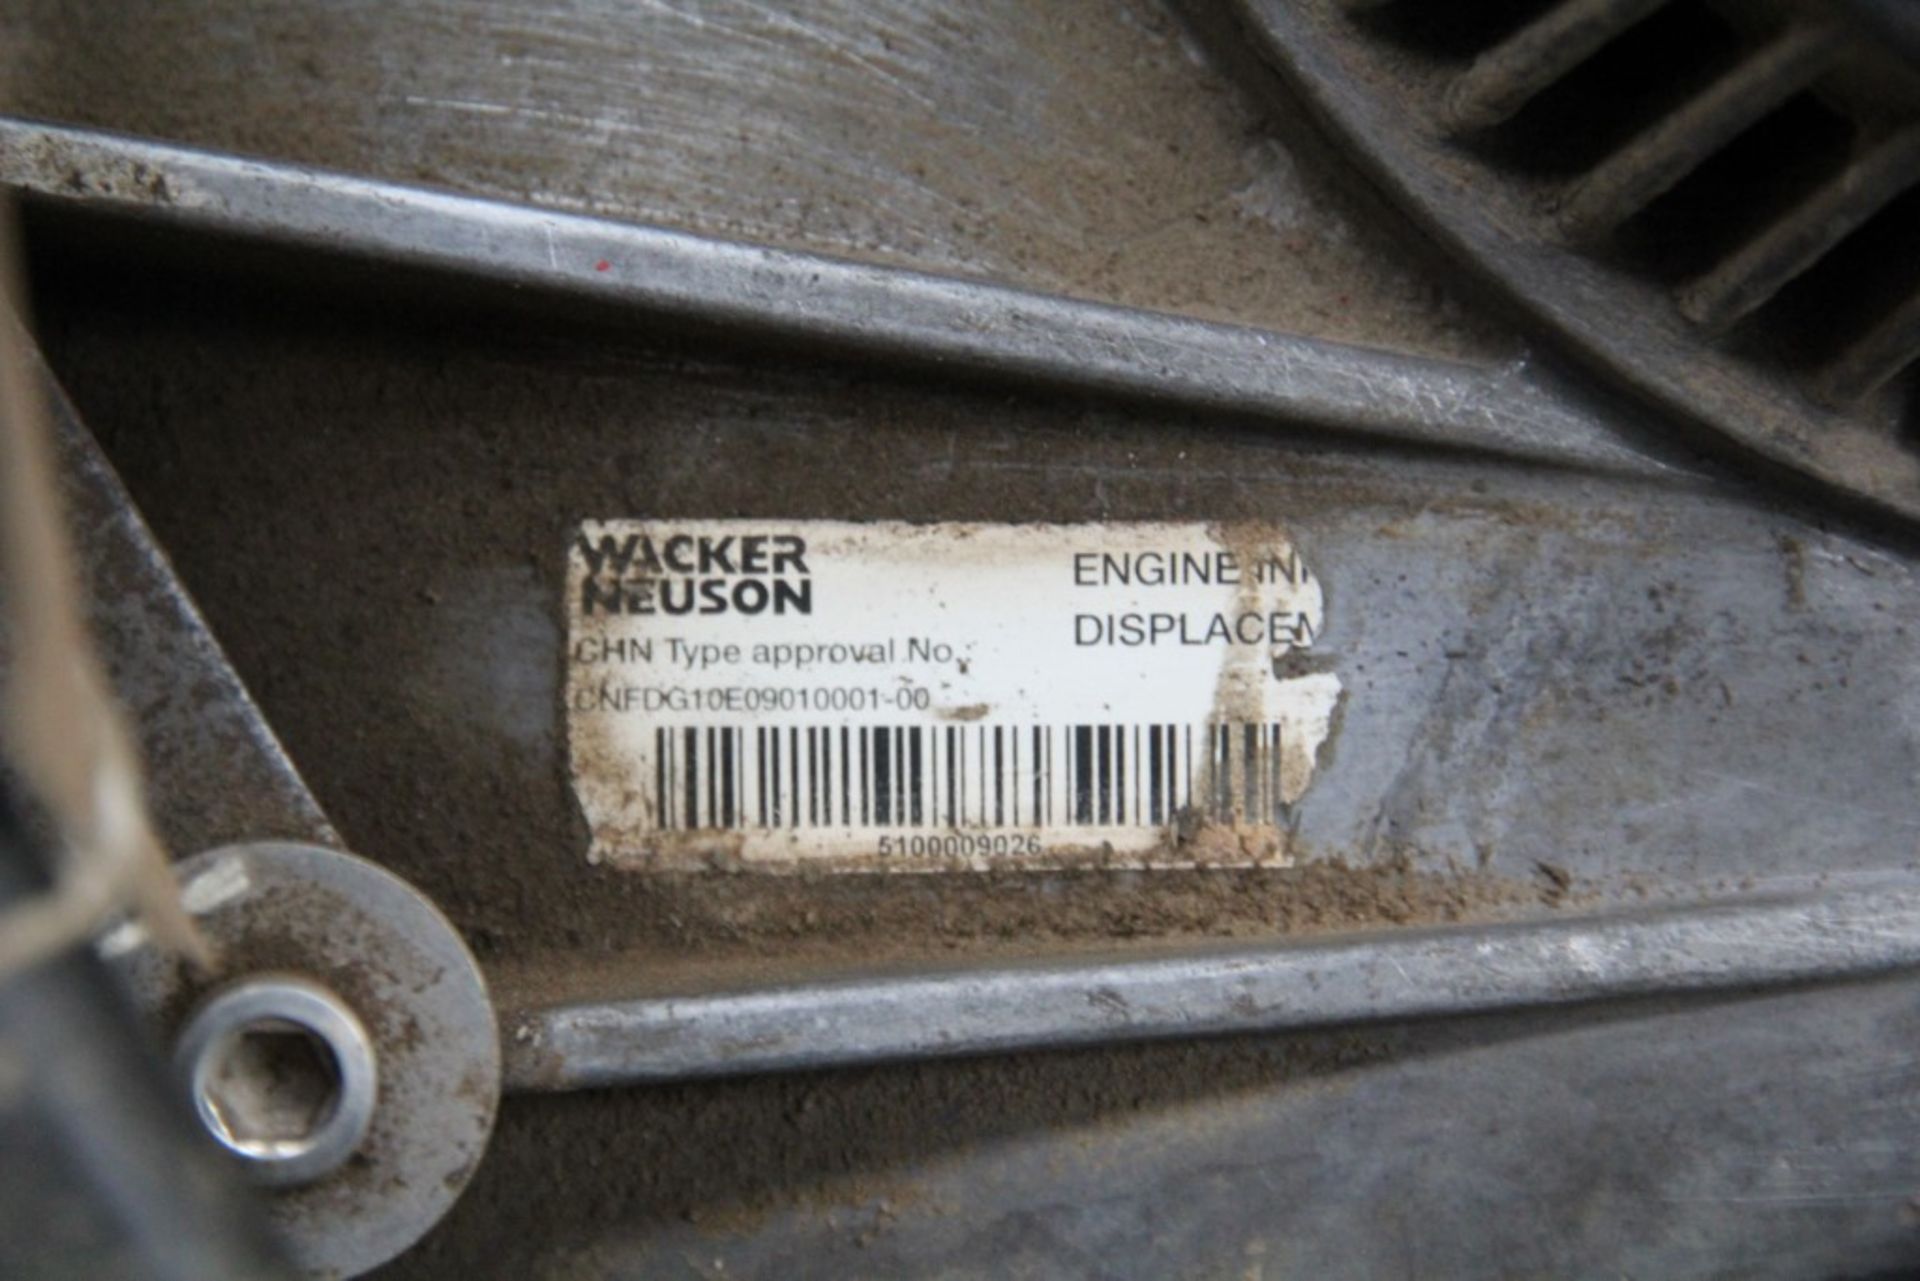 Whacker Neuson Petrol Breaker / Jack Hammer (1 of) - Image 3 of 6